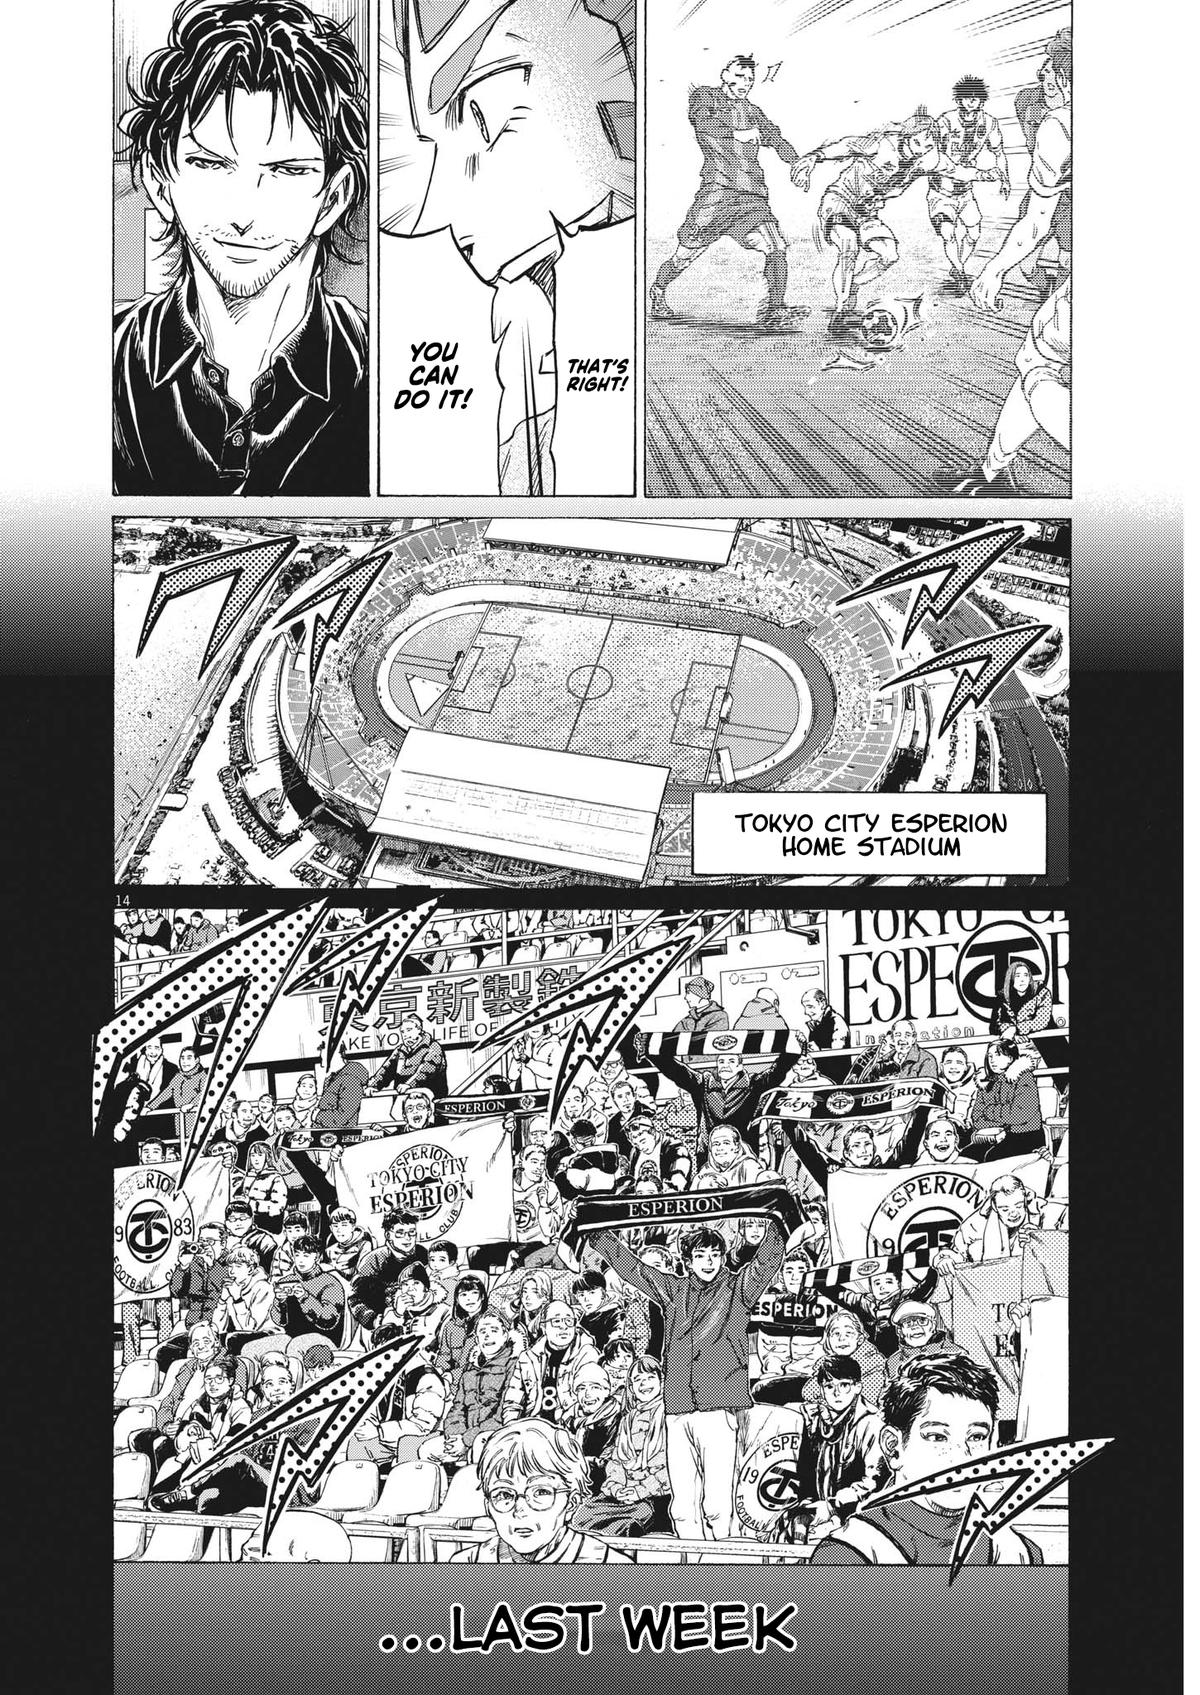 DISC] Ao Ashi - Chapter 350 : r/manga